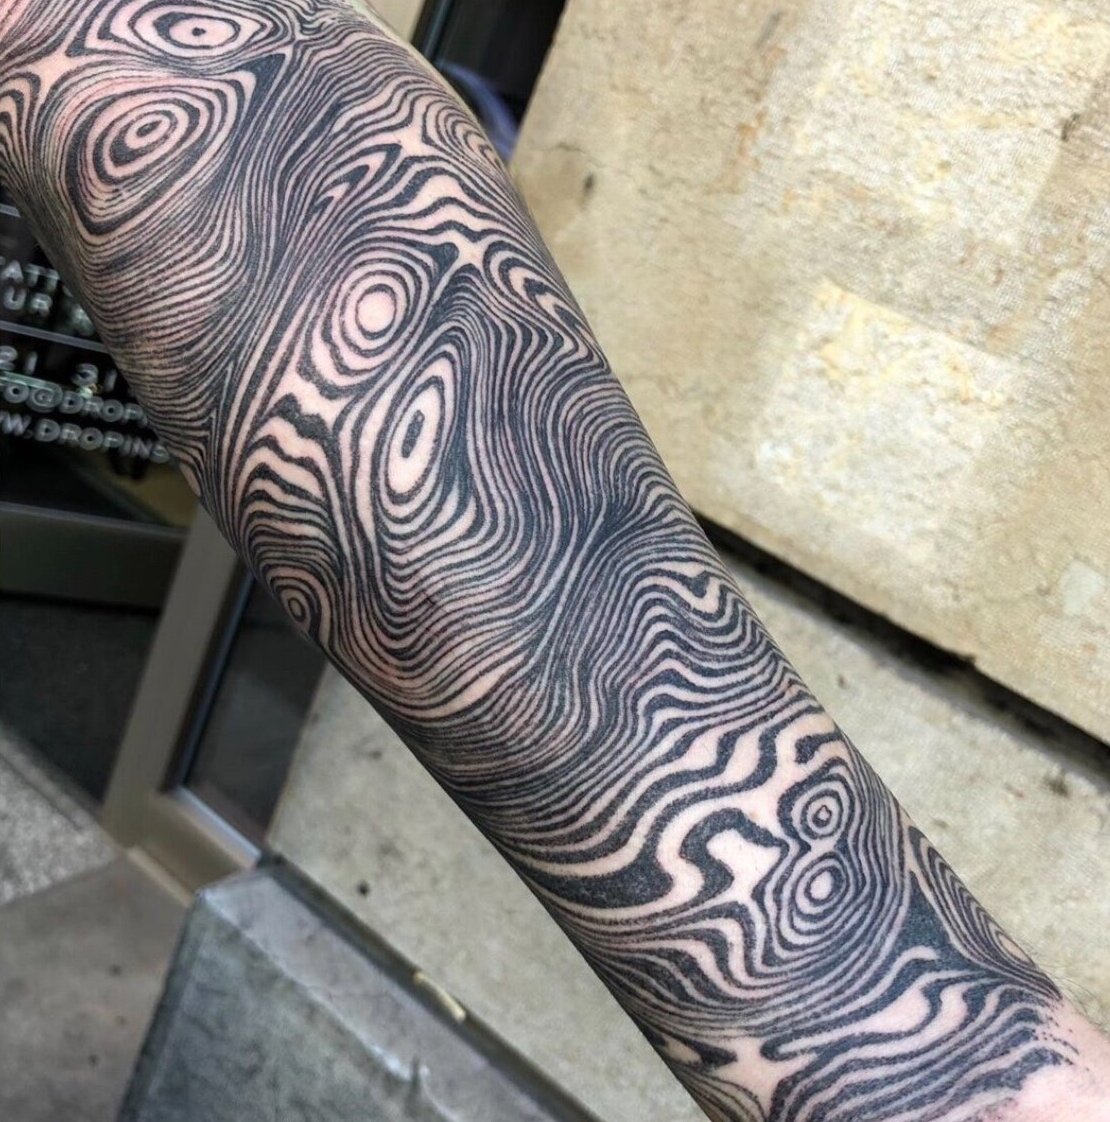 Snail Trail Stencil Gel – Jaded Tattoo Company